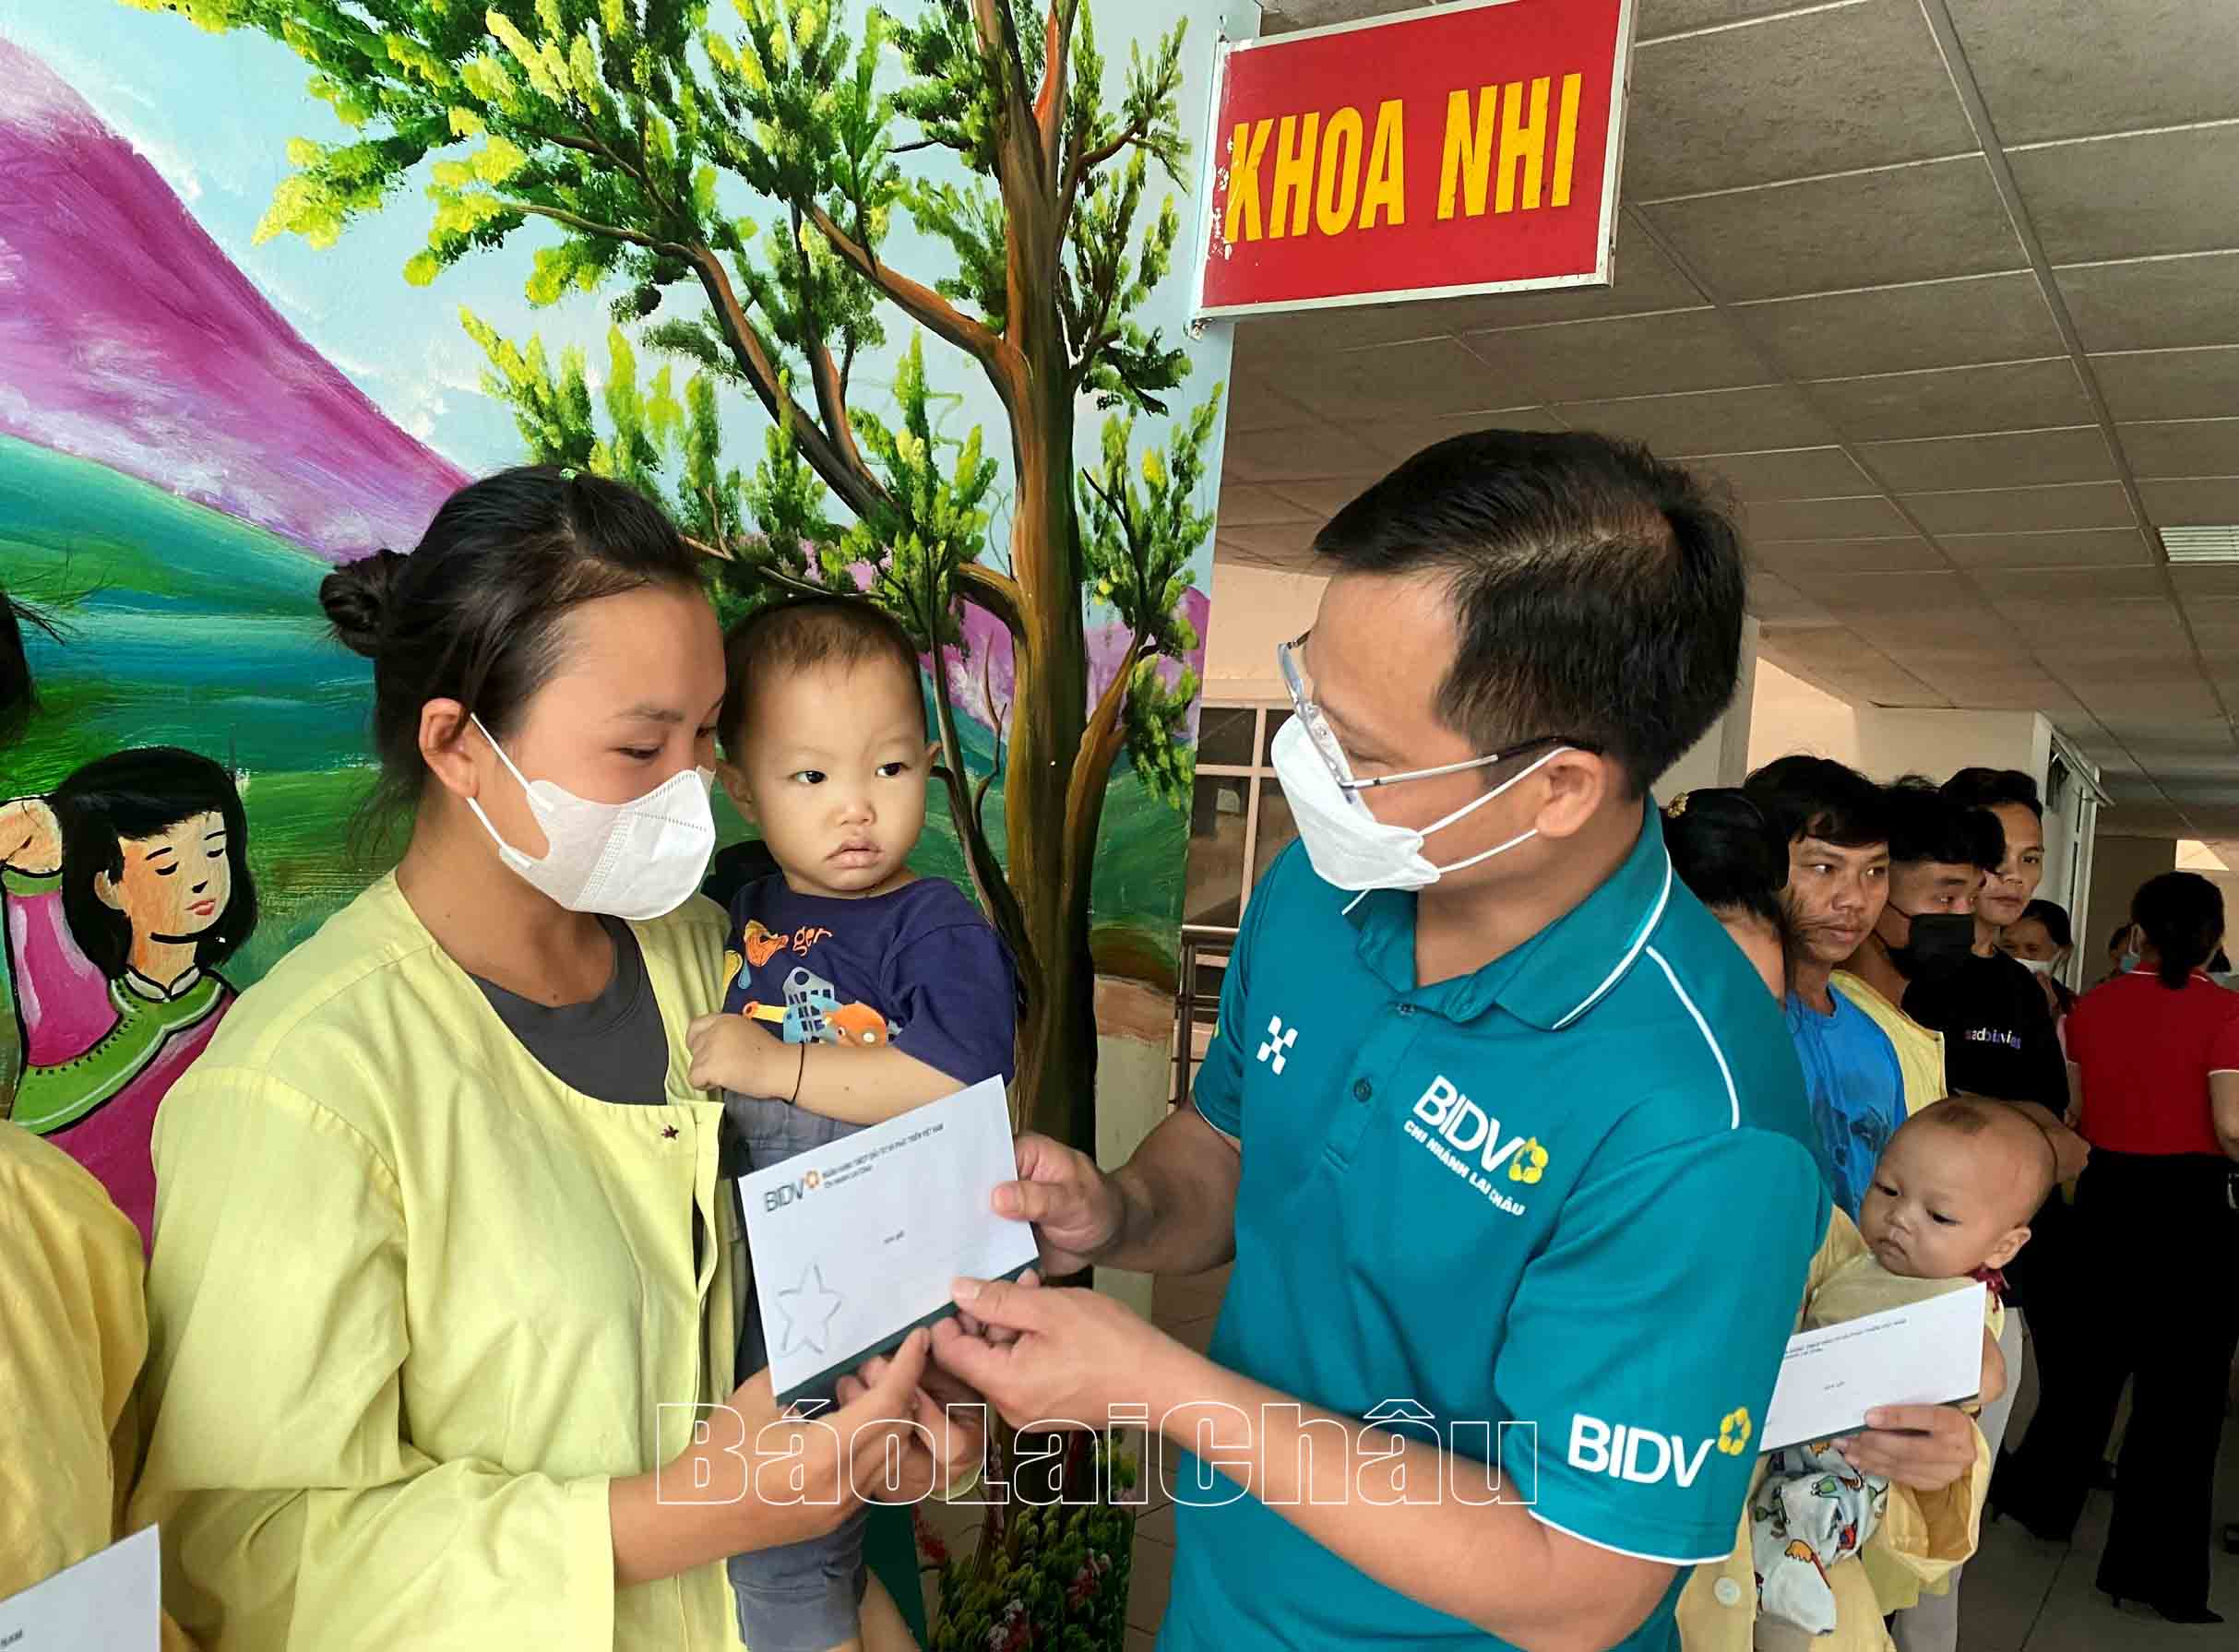 Lãnh đạo BIDV Lai Châu trao quà cho bệnh nhi có hoàn cảnh khó khăn đang điều trị tại Bệnh viện Đa khoa tỉnh.